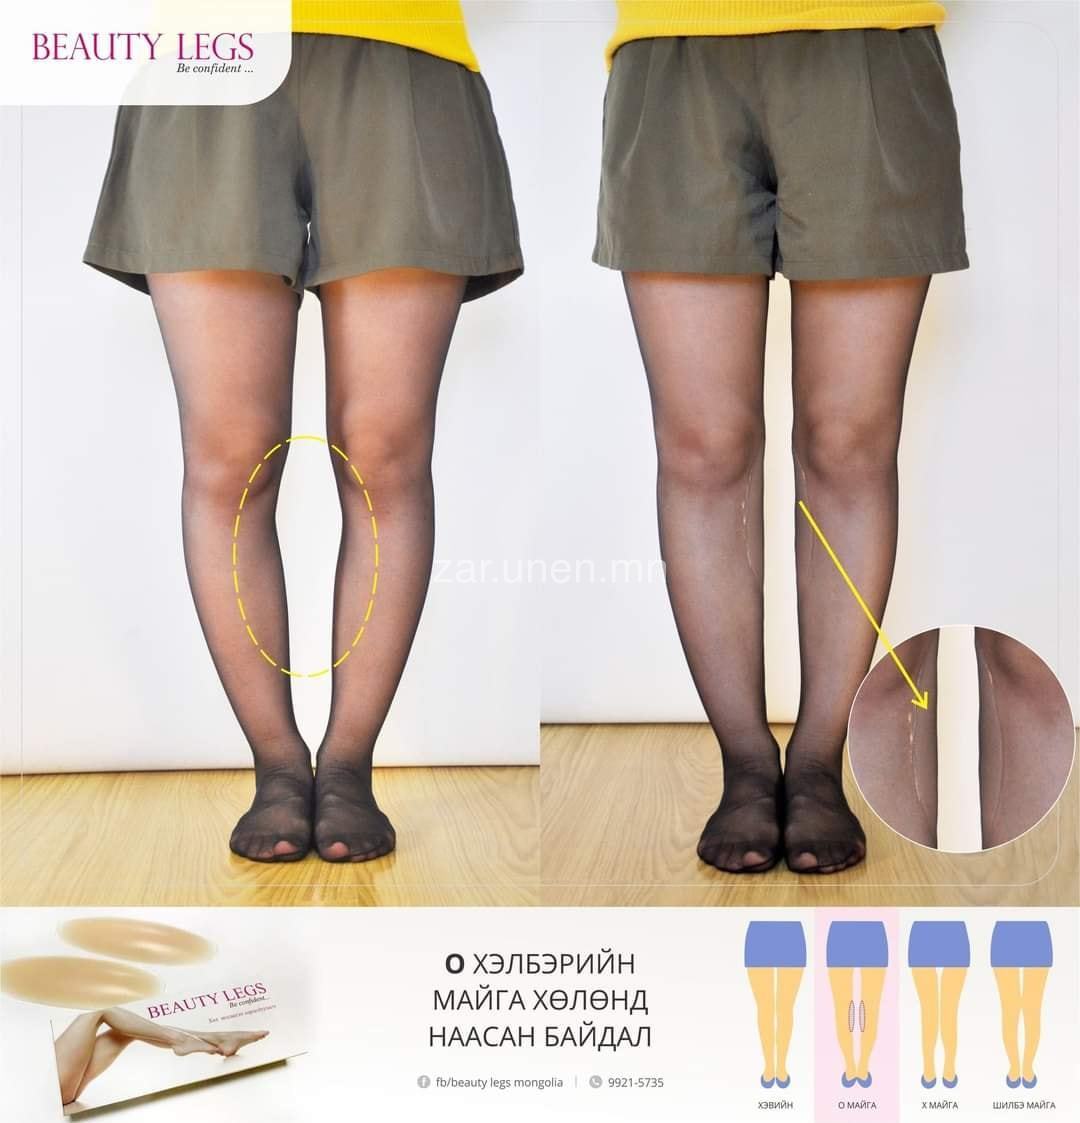 🎀Мэдээлэл🎀 #BEAUTY_LEGS гэж юу вэ? Хэрхэн хэрэглэх вэ? Beauty legs нь 